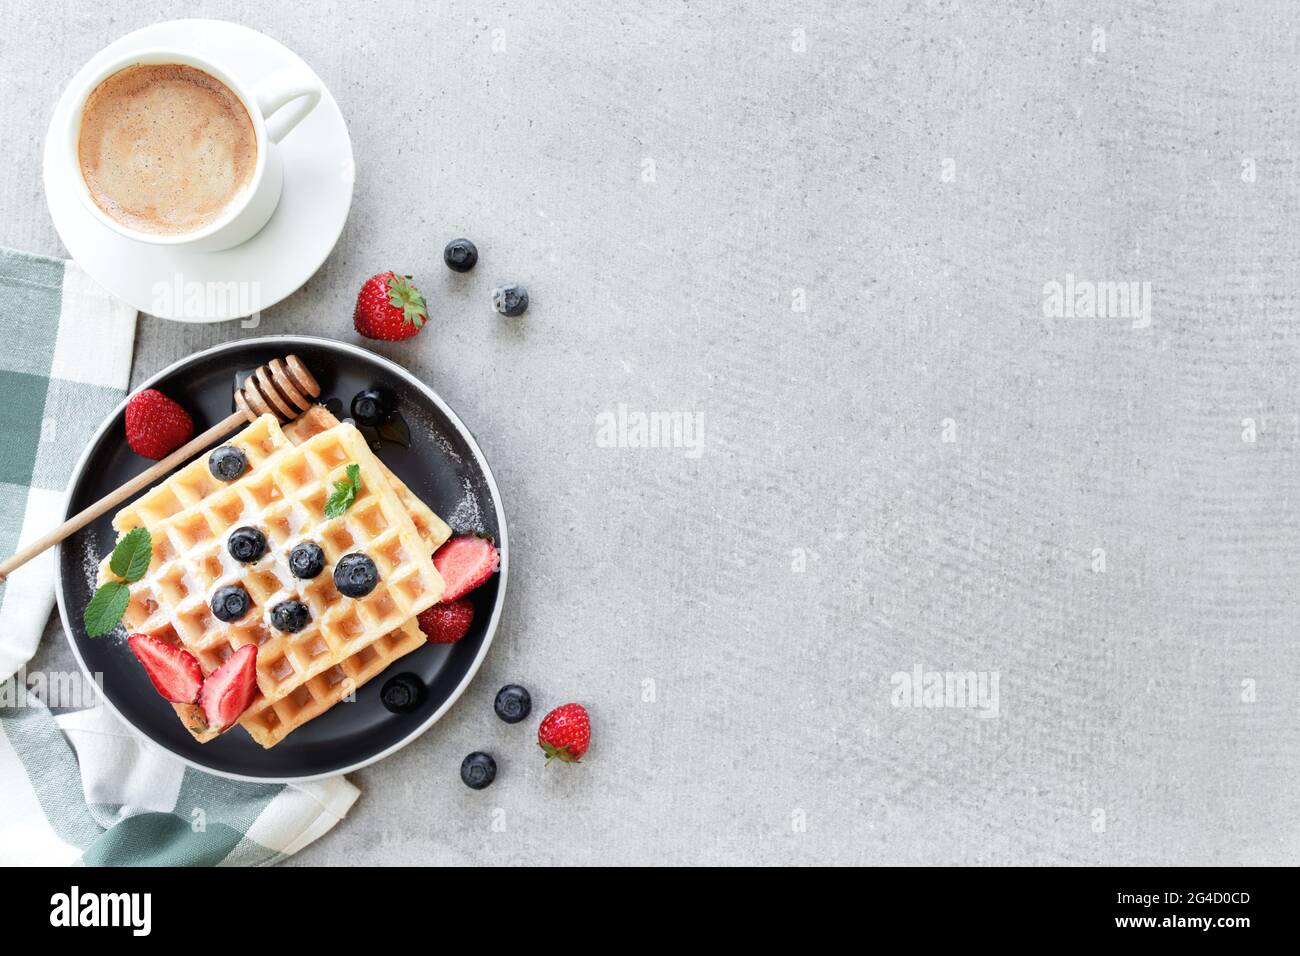 Assiette de gaufres sur la table avec myrtille, fraise, menthe et tasse de café blanc Banque D'Images